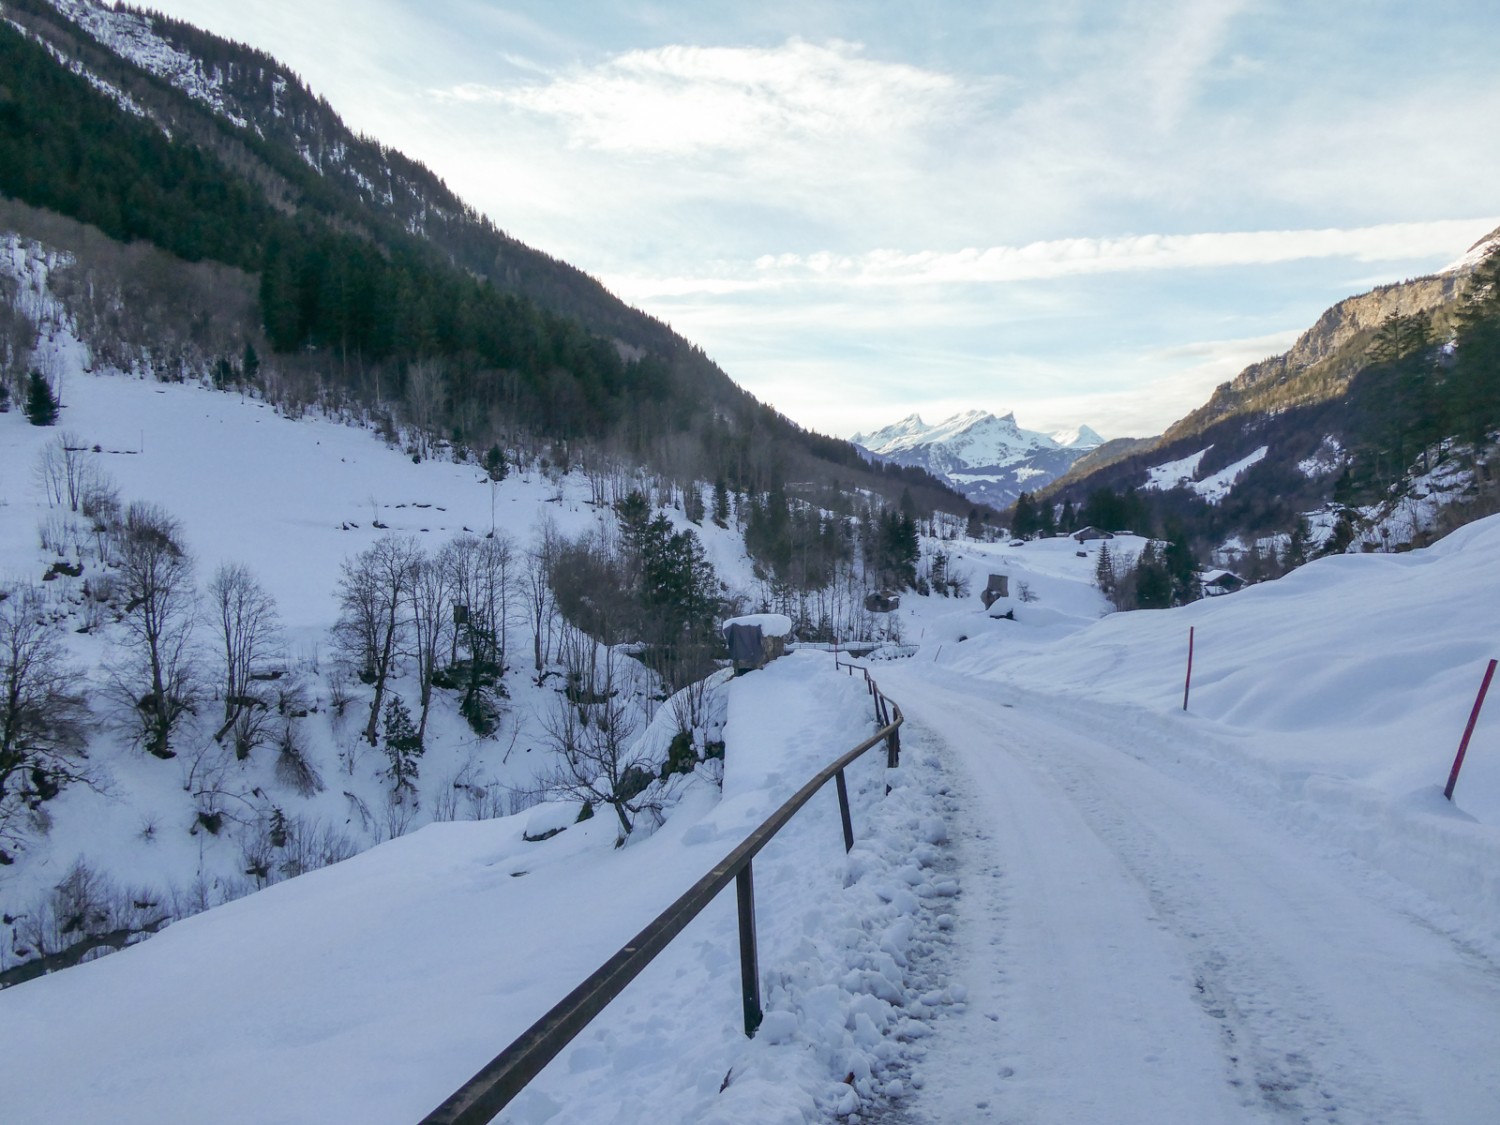 En hiver, l’ancienne route du col est déneigée et peut servir de chemin de randonnée.